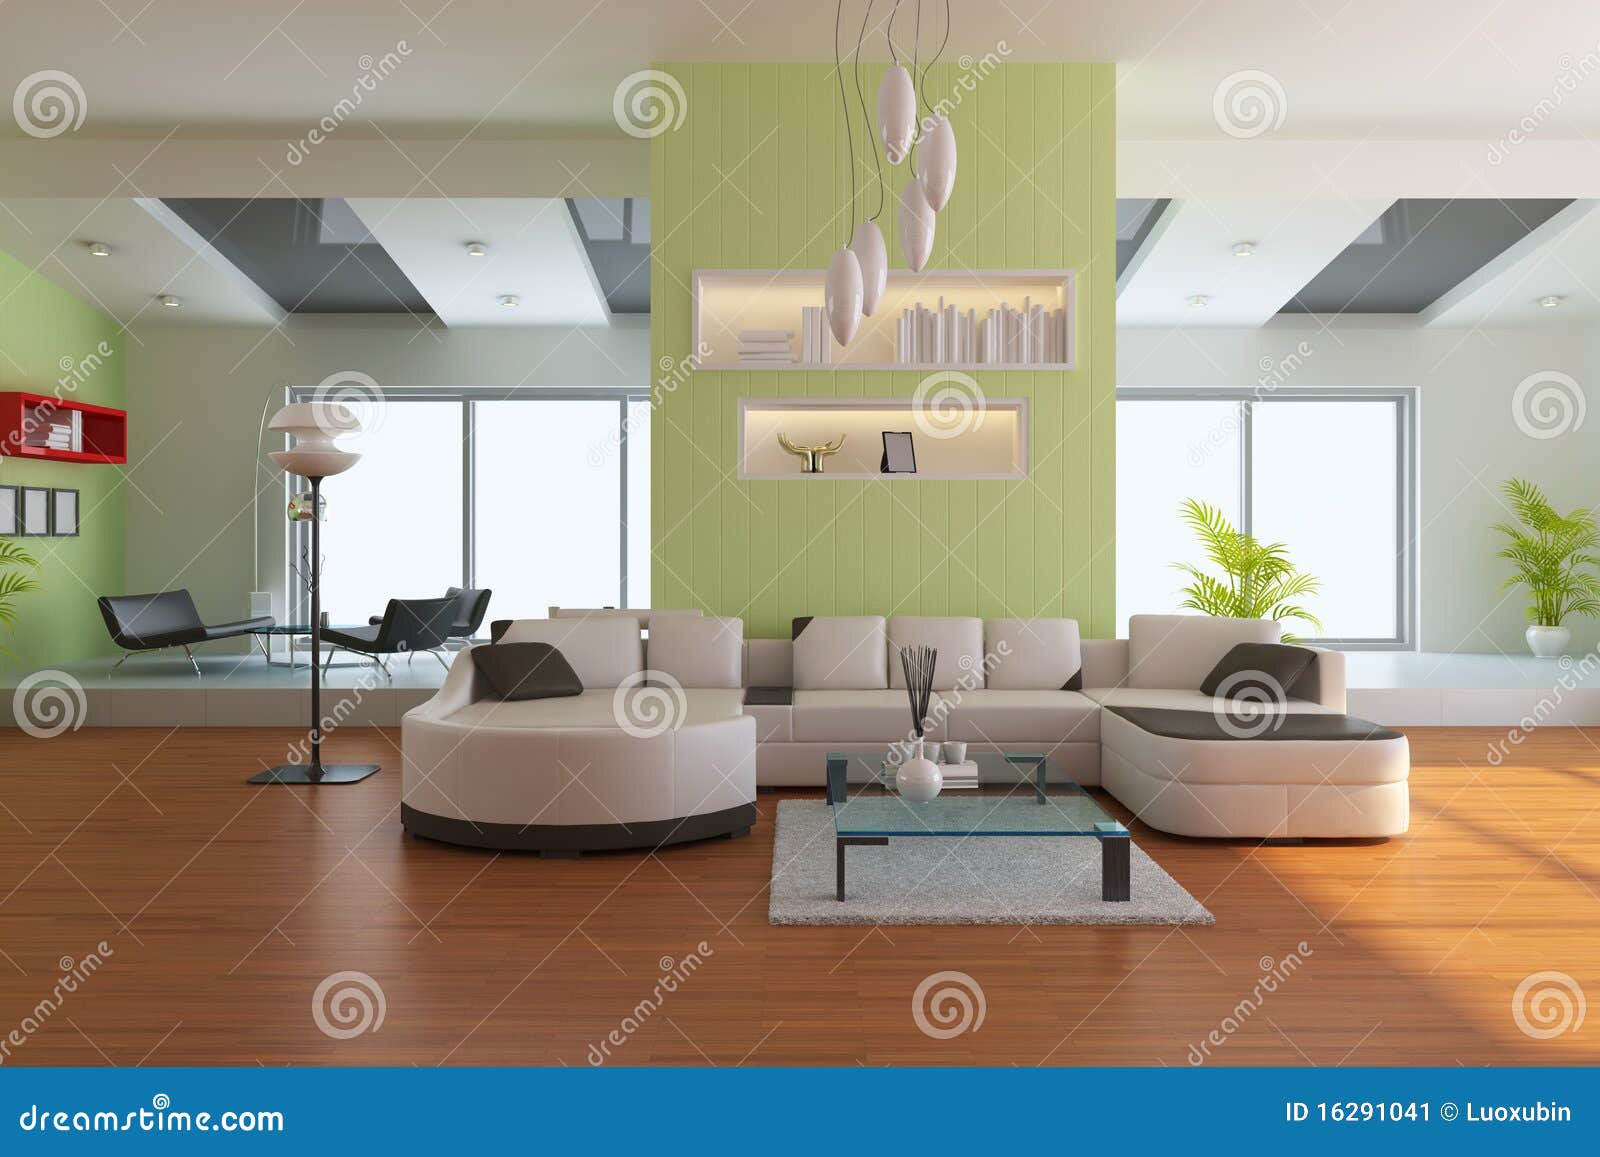 Modern living room stock illustration. Illustration of interior - 16291041